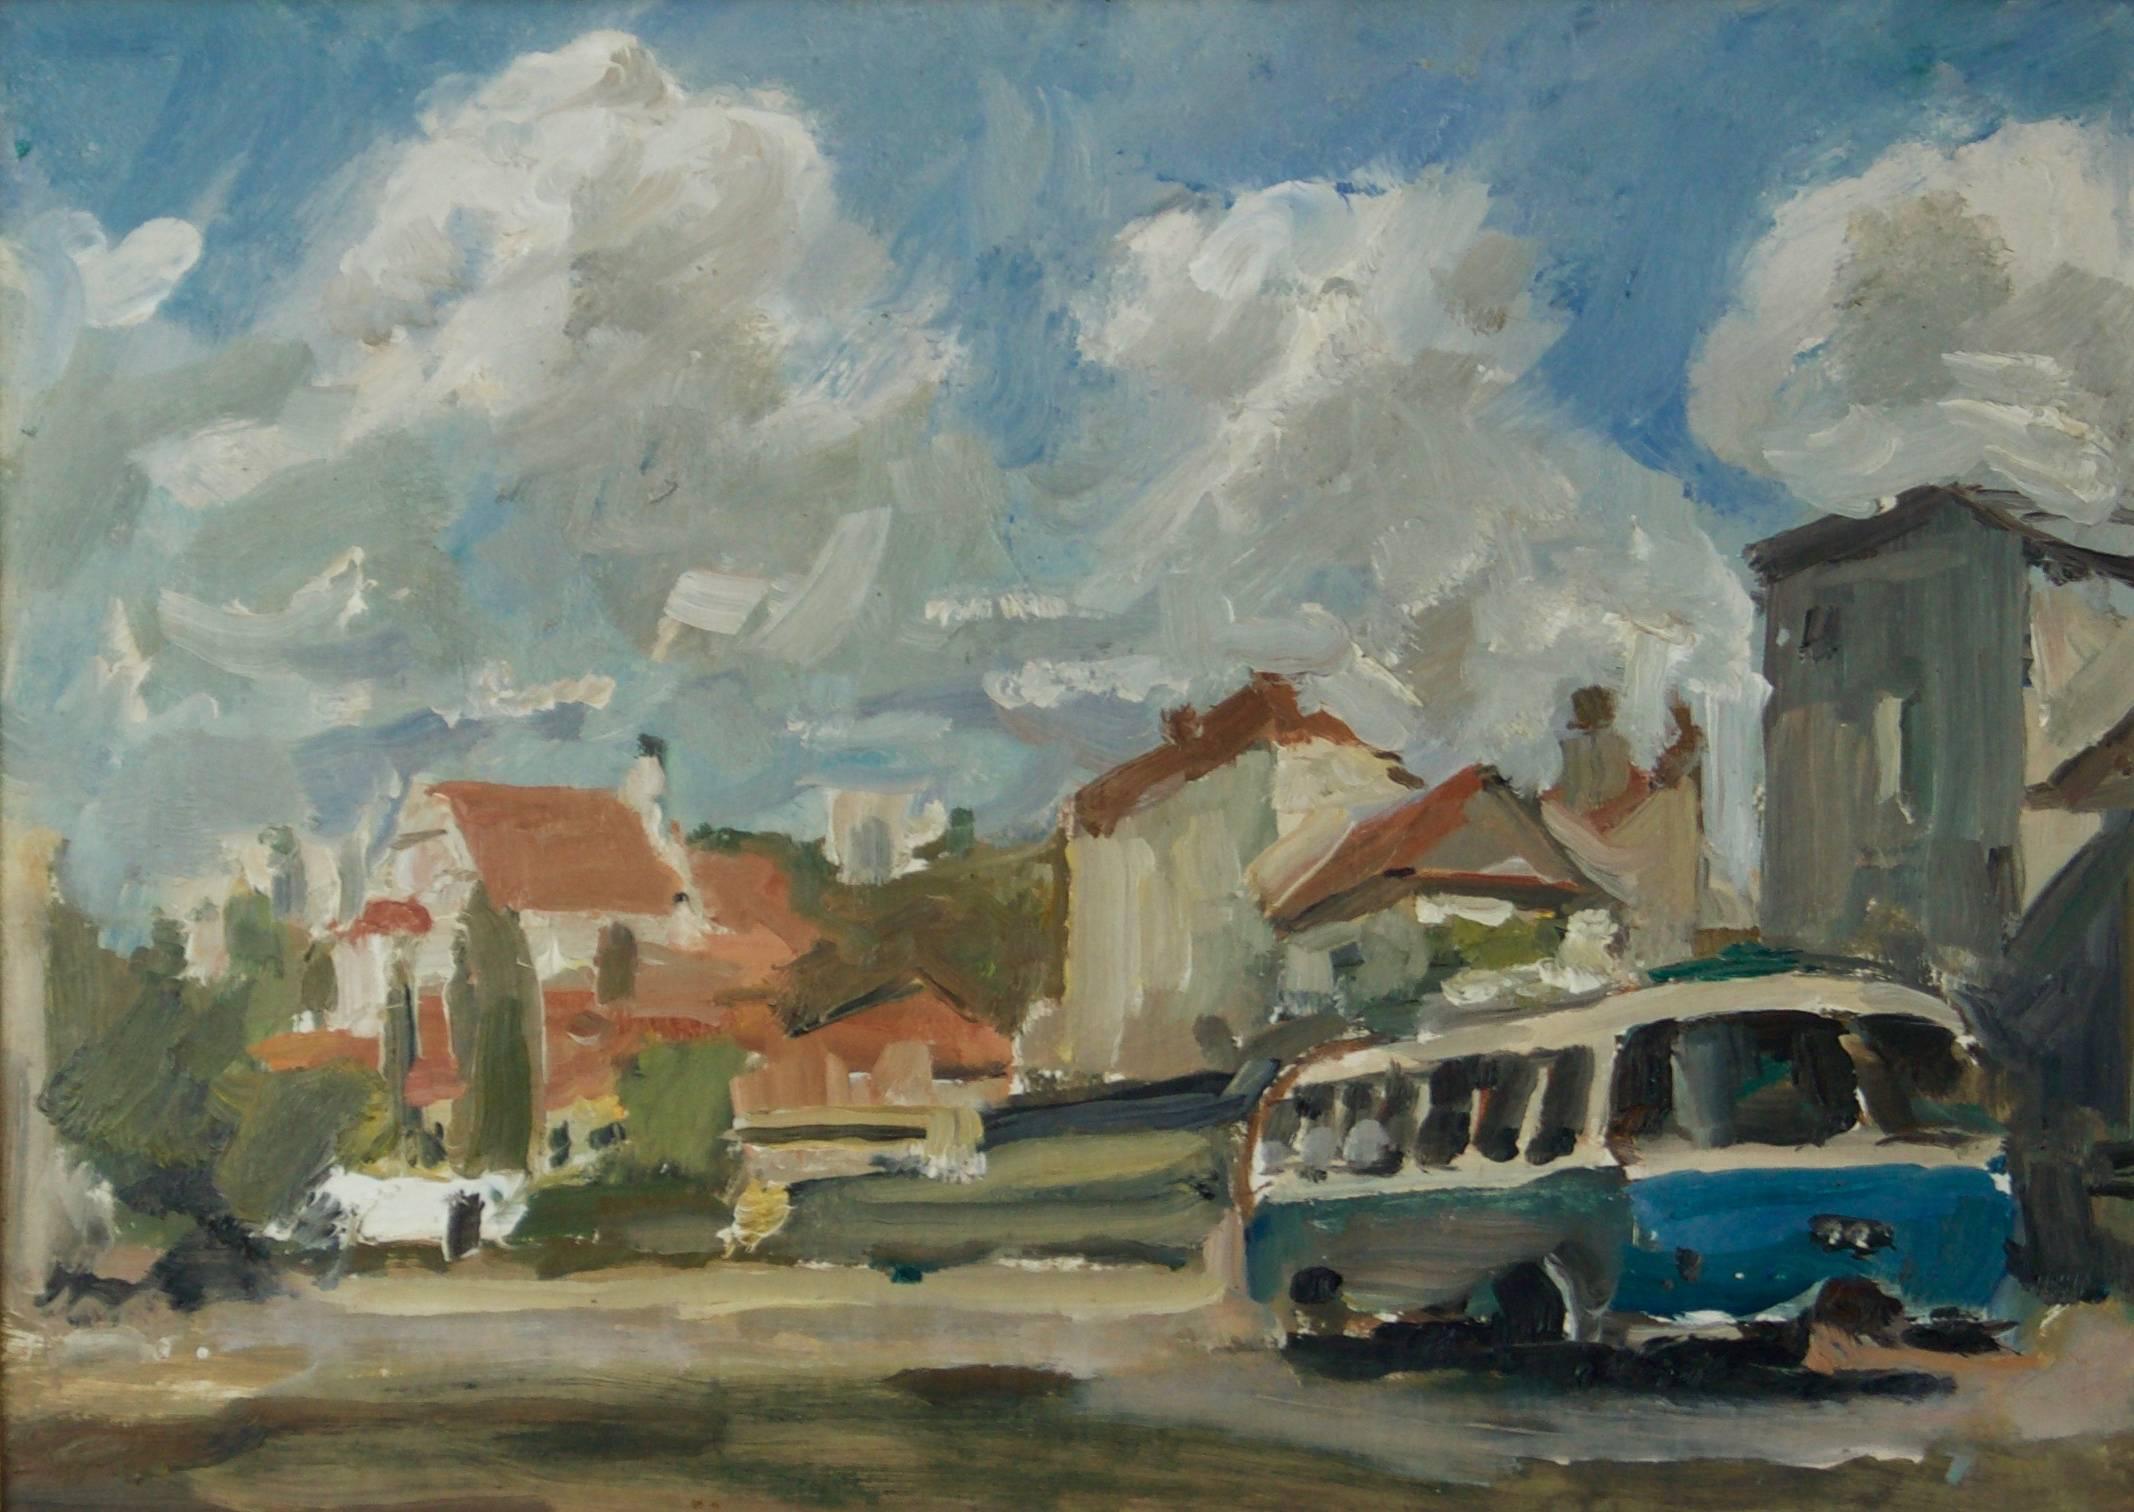 Kazimierz in Poland - Mid - Late 20th Century Impressionist Oil by Krajewska